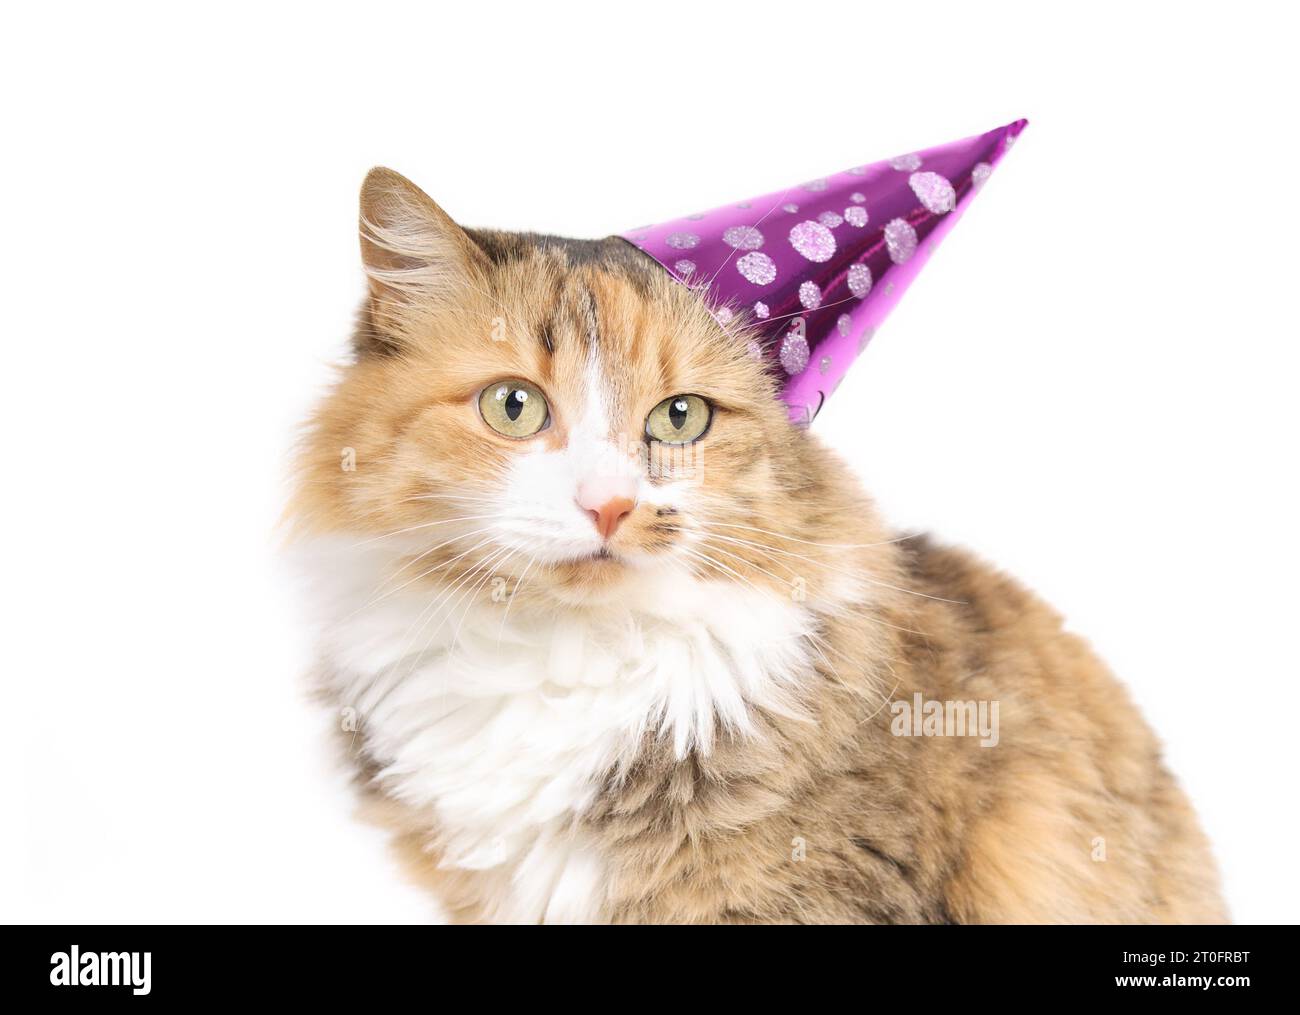 Flauschige Calico-Katze mit Partyhut, die in die Kamera schaut. Die orangene Katze trägt einen rosafarbenen Partykegel außerhalb der Mitte. Haustierkonzept für Partyfeiern und Feiertage Stockfoto